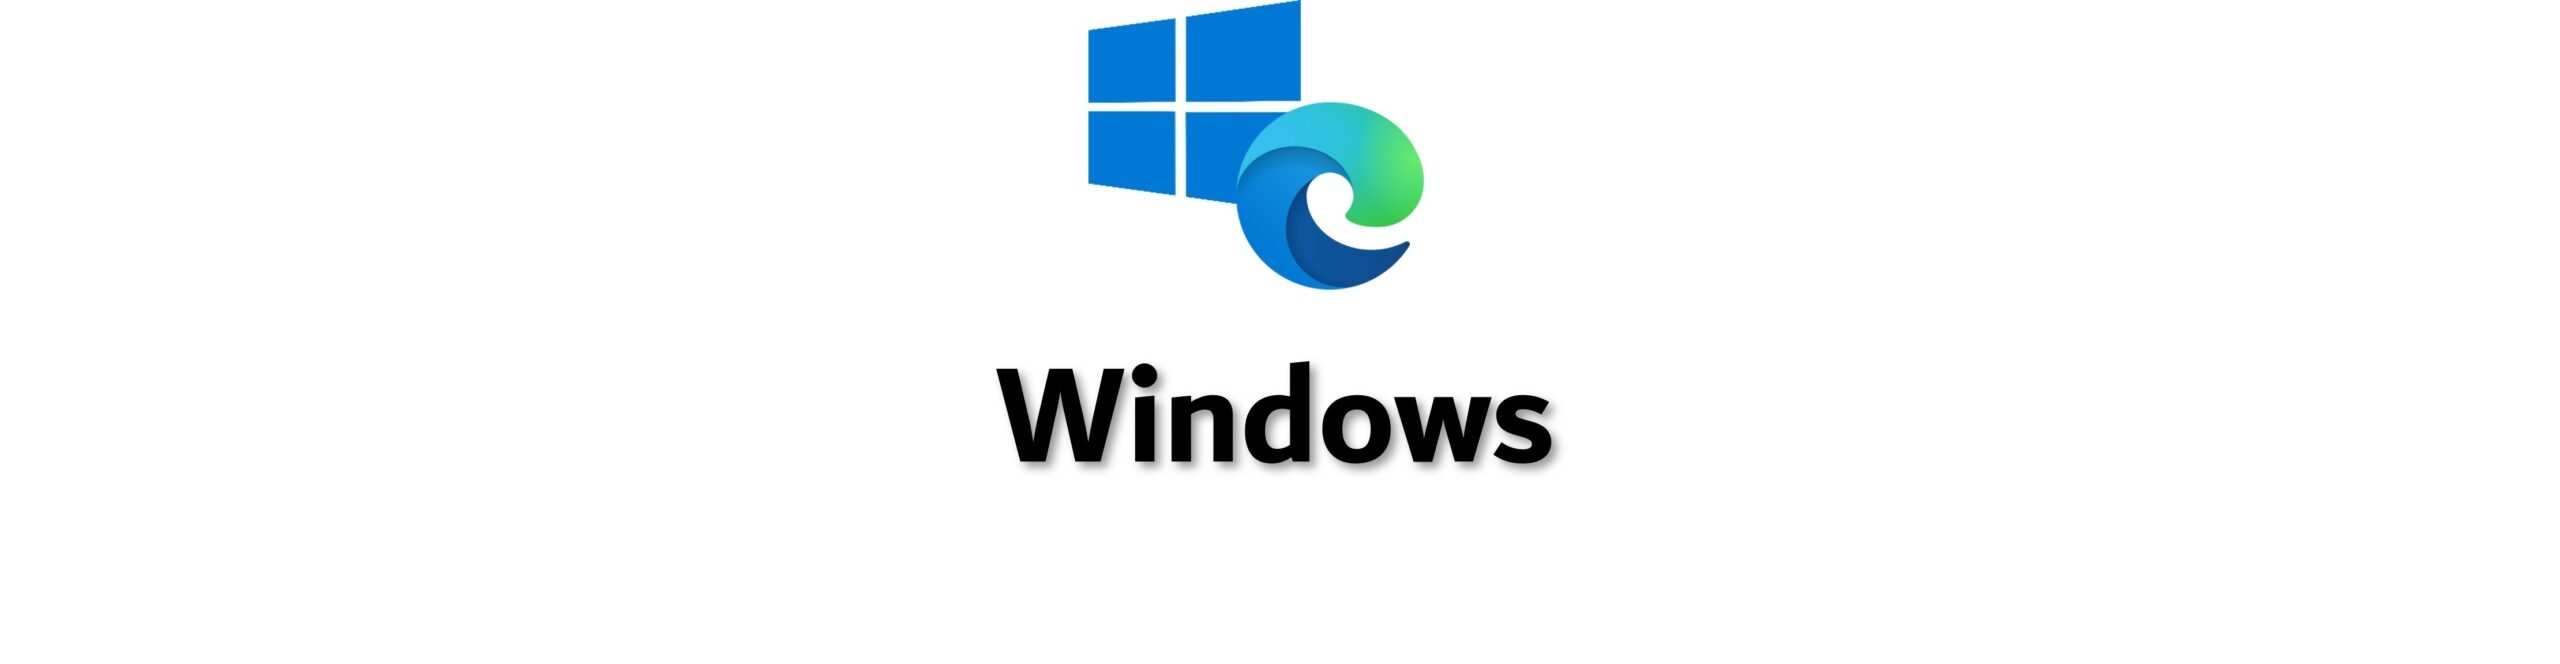 Windows und Edge Logo